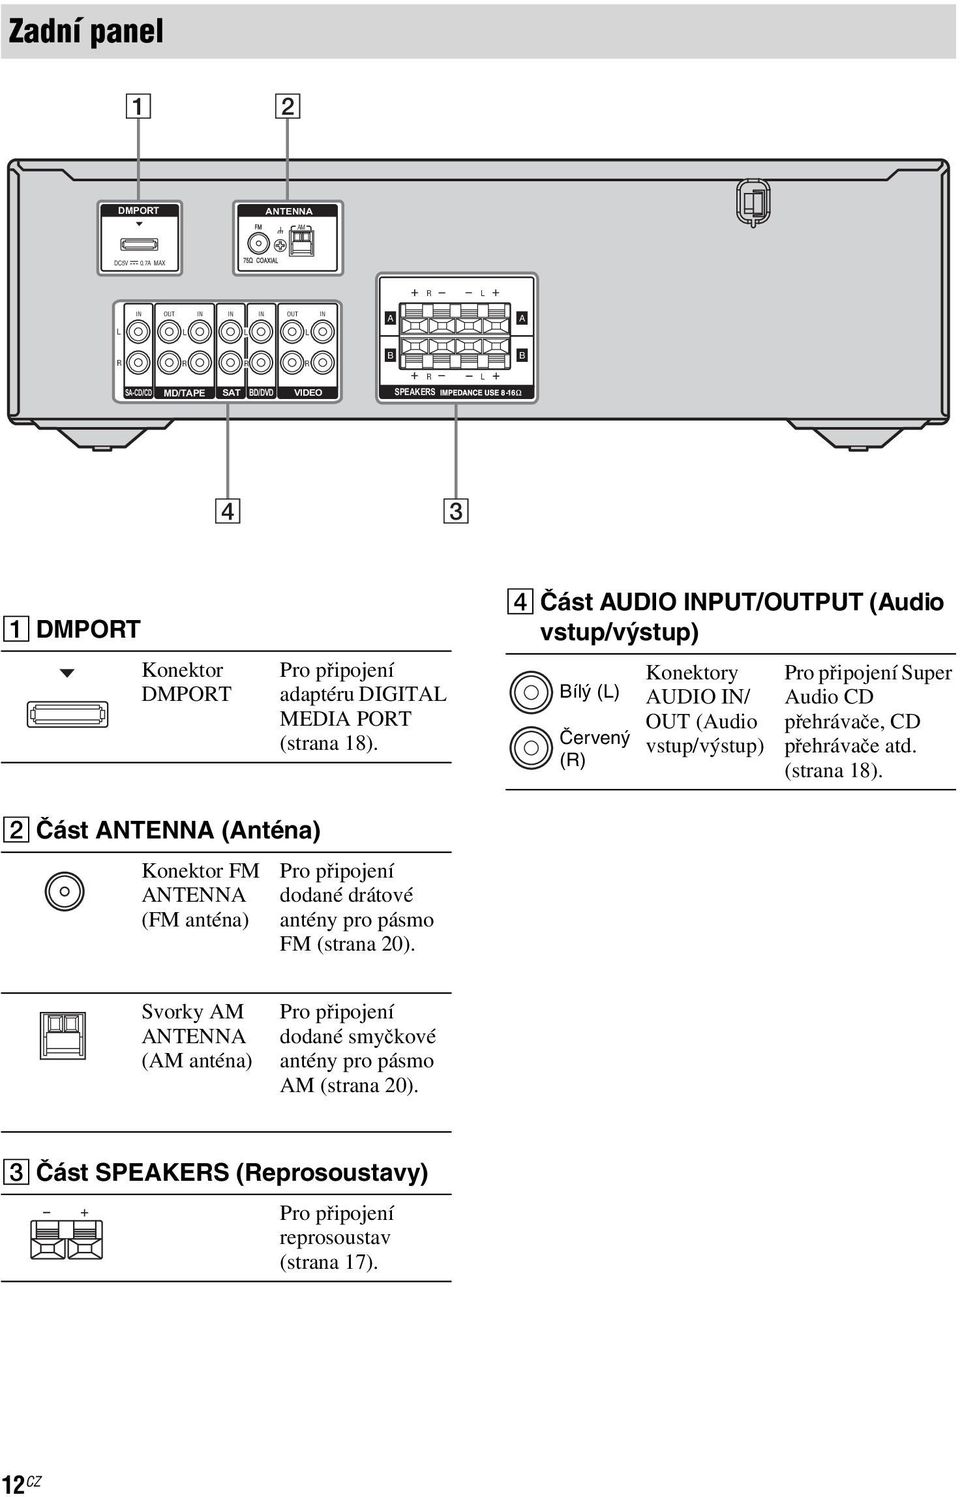 D Část AUDIO INPUT/OUTPUT (Audio vstup/výstup) Bílý () Červený () Konektory AUDIO IN/ OUT (Audio vstup/výstup) Pro připojení Super Audio CD přehrávače, CD přehrávače